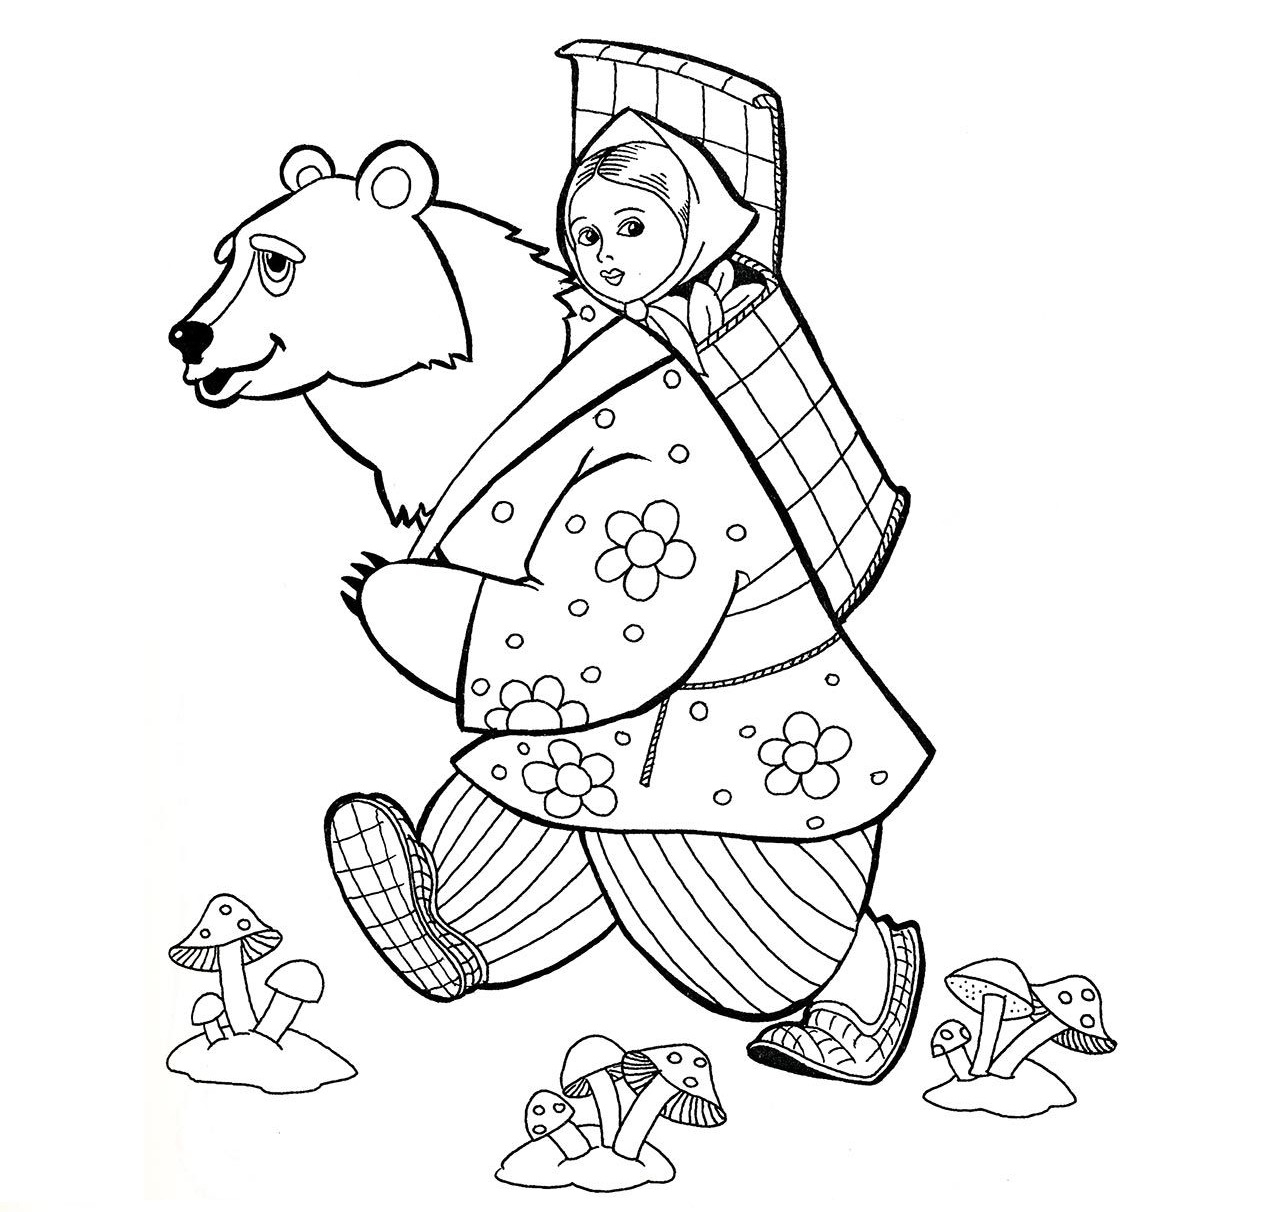 Based on Russian folk tales for preschoolers #2